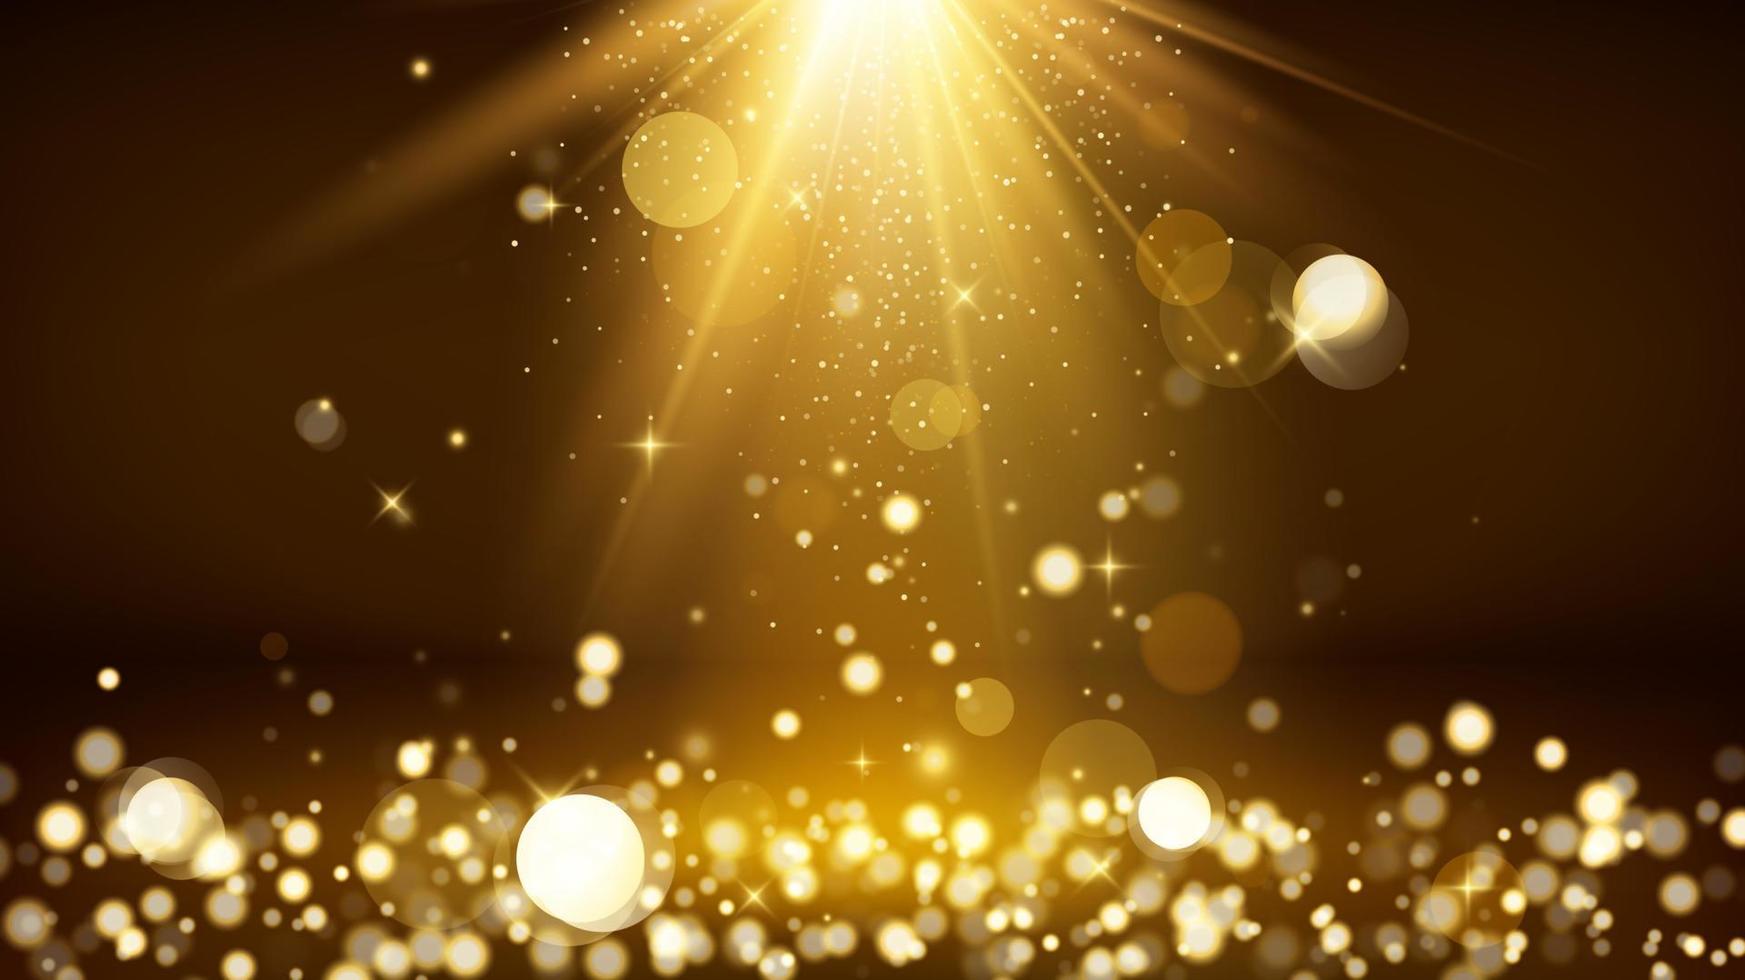 Light rays and golden falling glittering dust. Shiny spotlight or scene. Blurred lights bokeh. Vector illustration